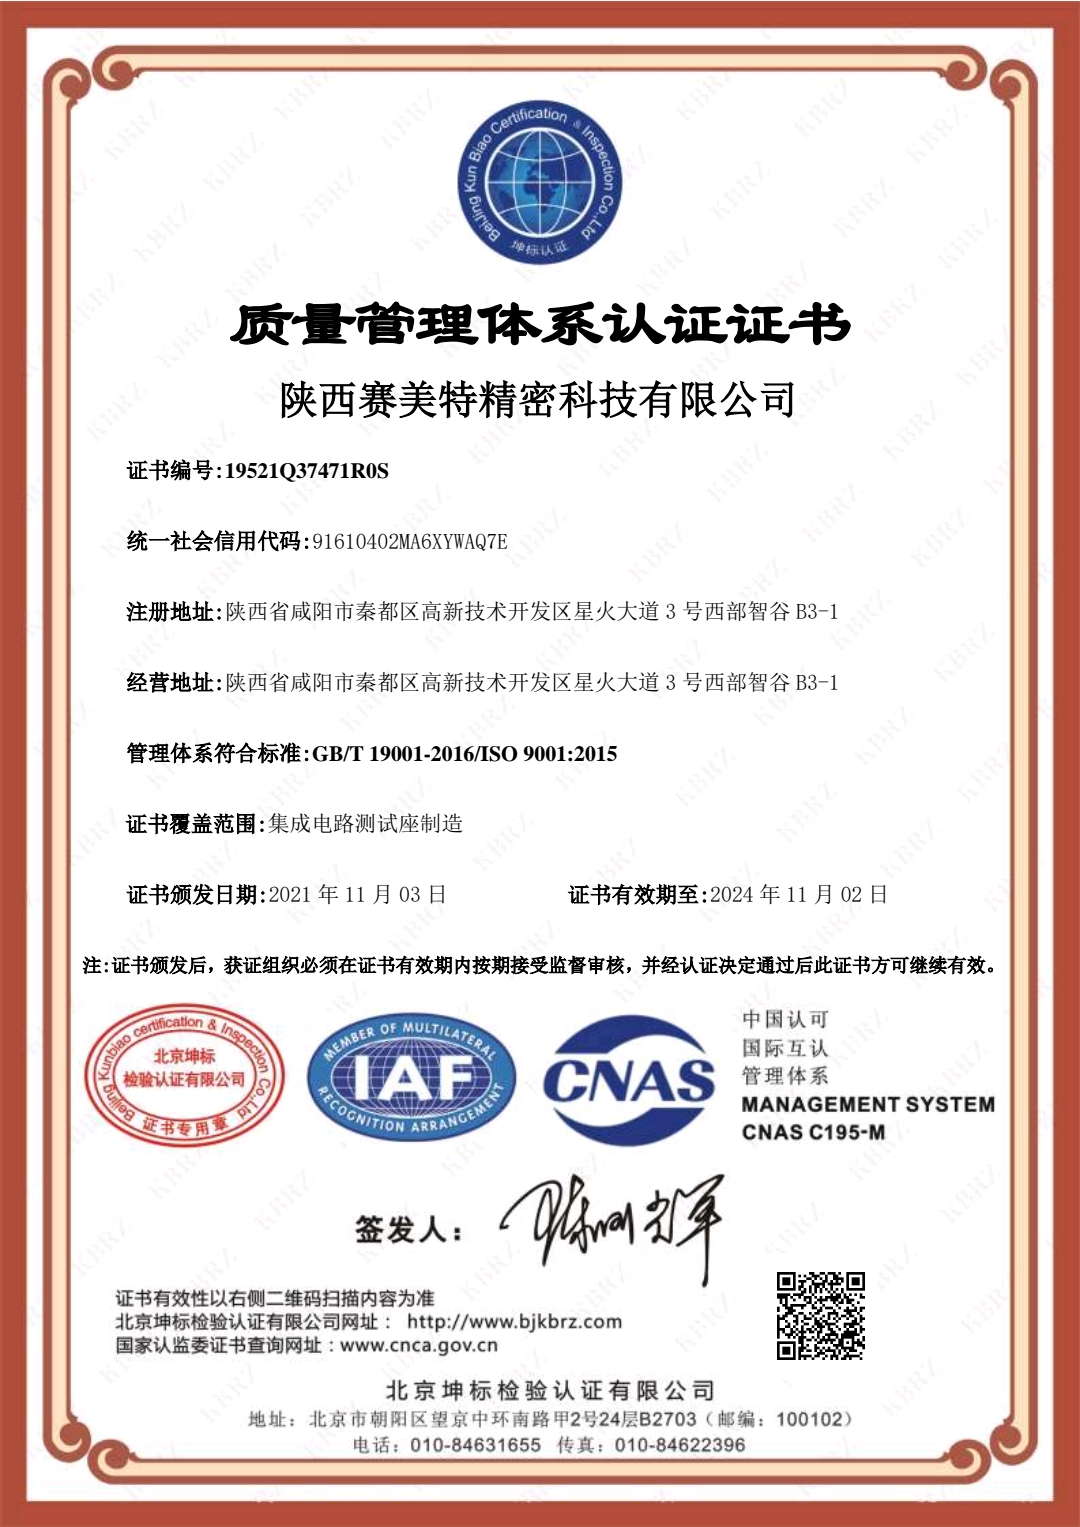 恭喜陕西赛美特精密科技有限公司顺利通过审核取得ISO9001质量管理体系认证证书